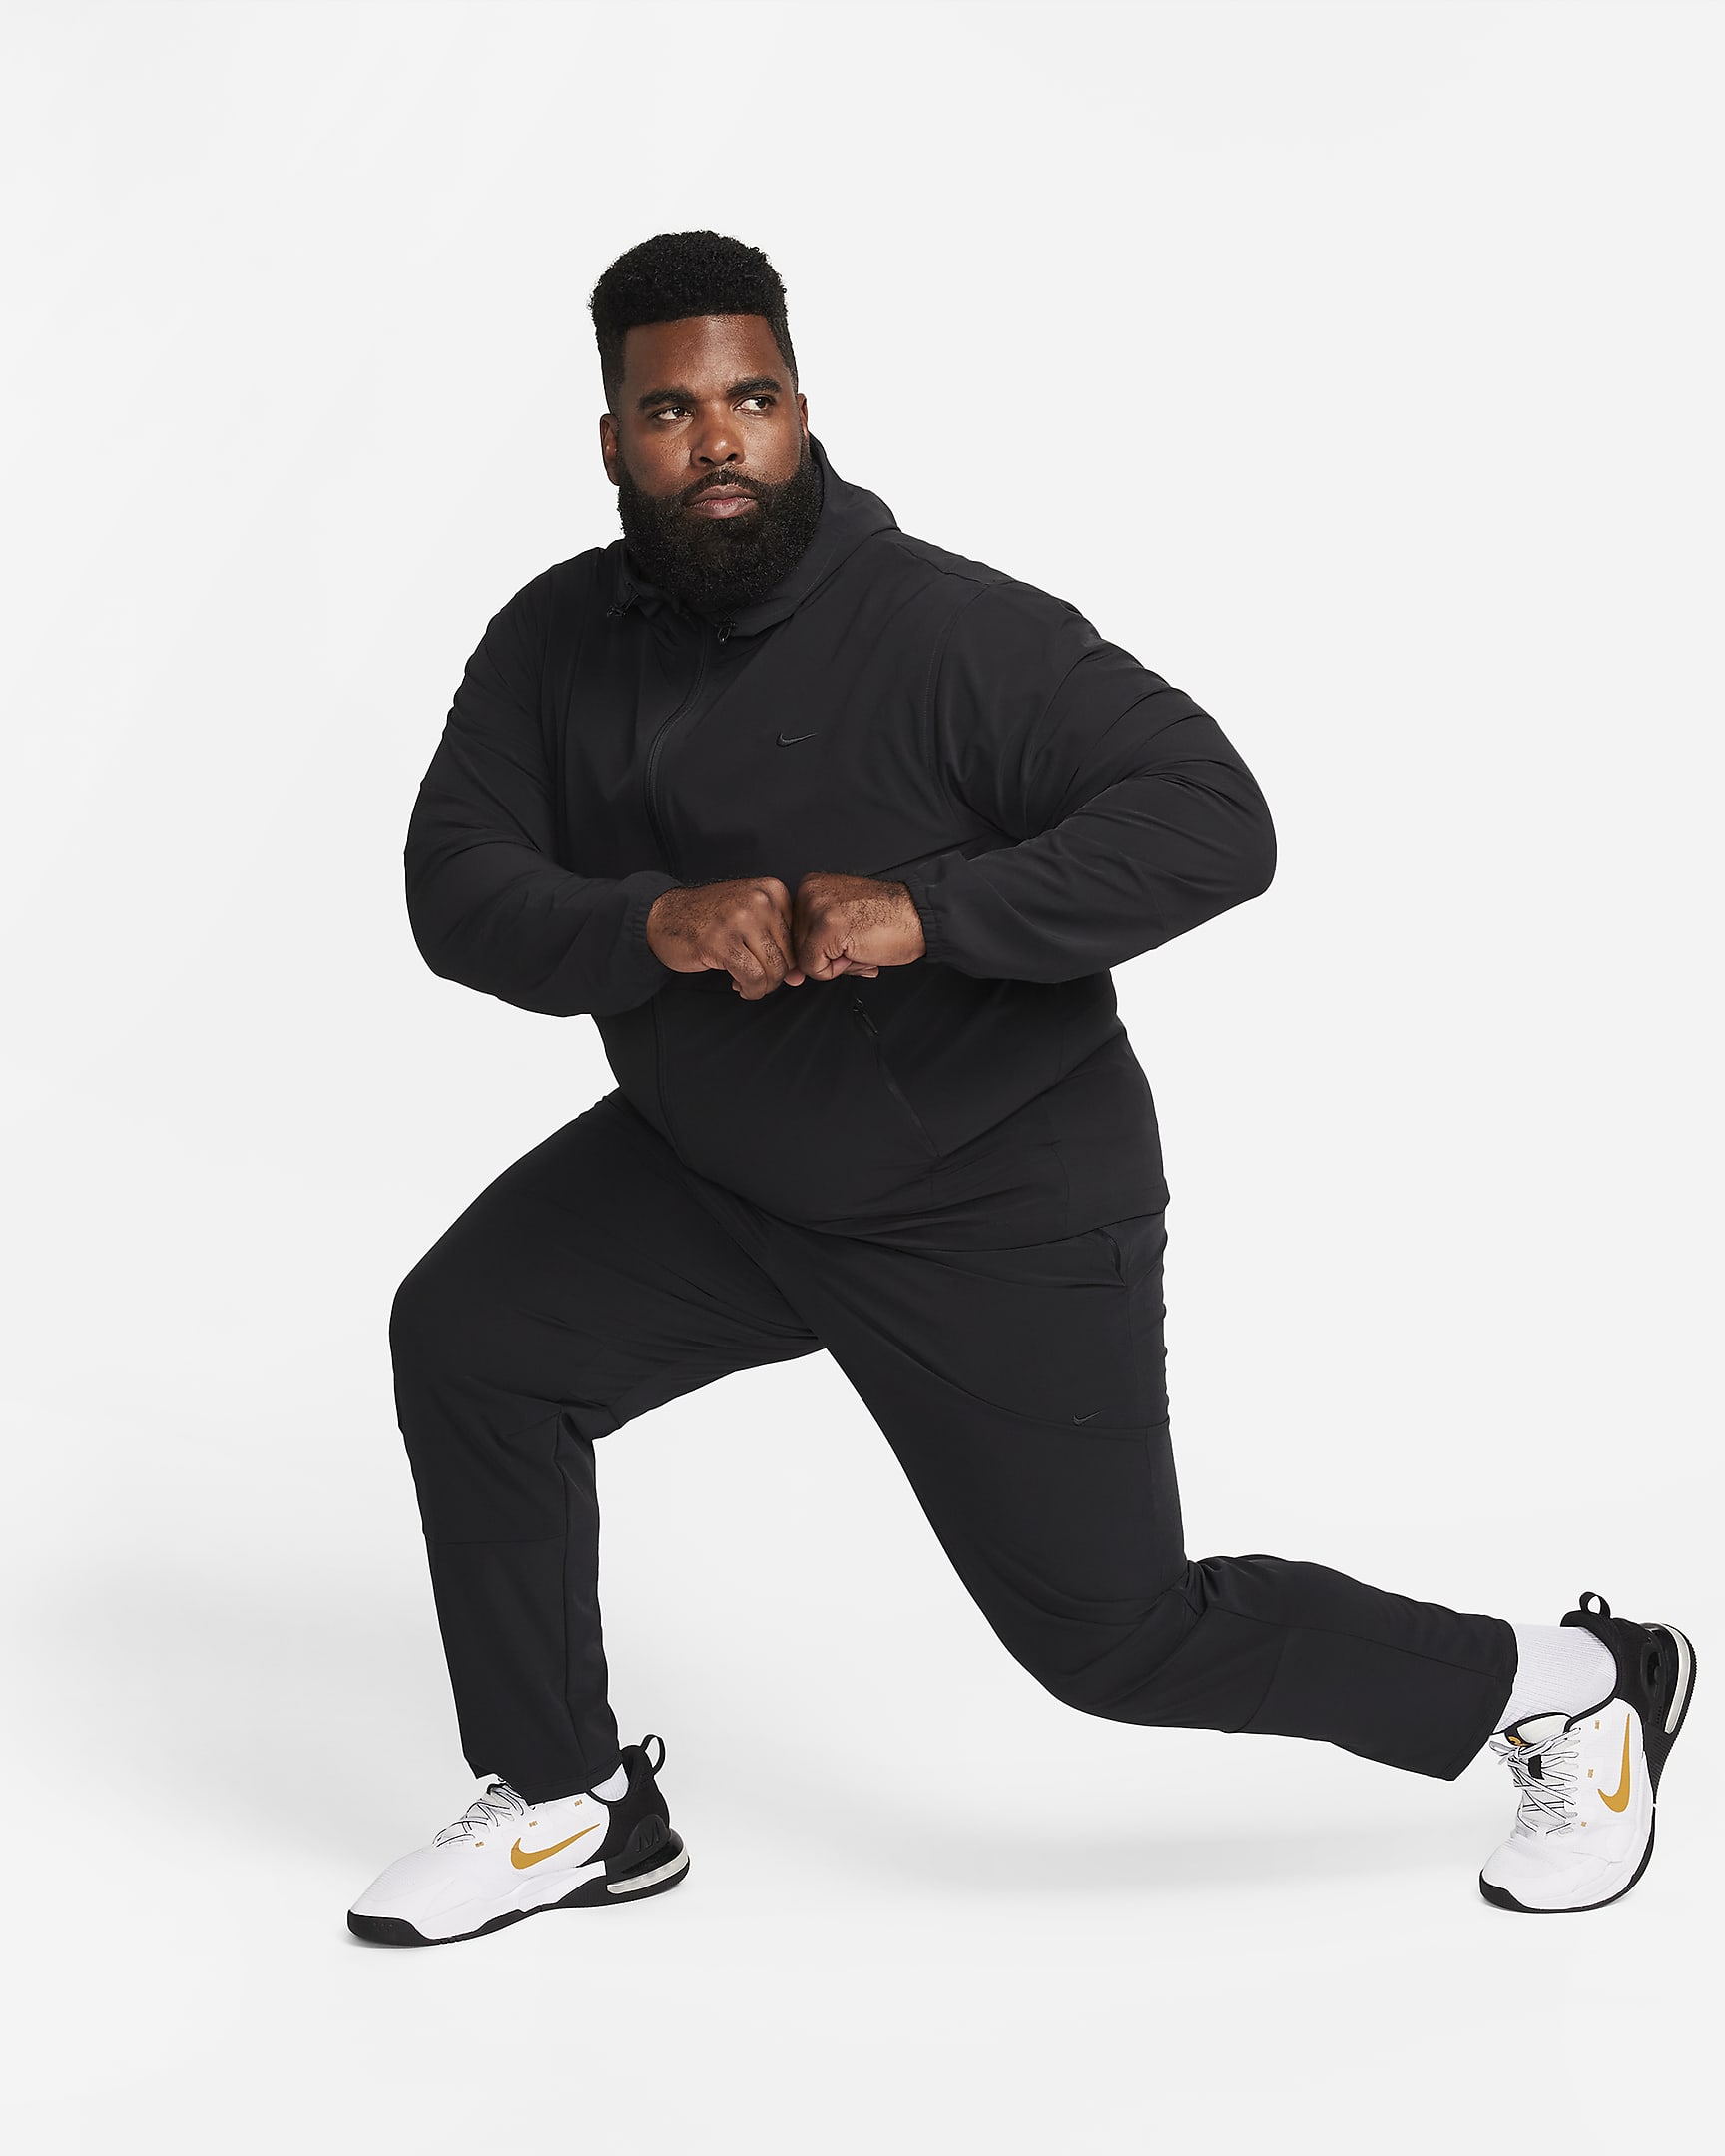 Nike Unlimited Men's Dri-FIT Tapered Leg Versatile Pants. Nike.com